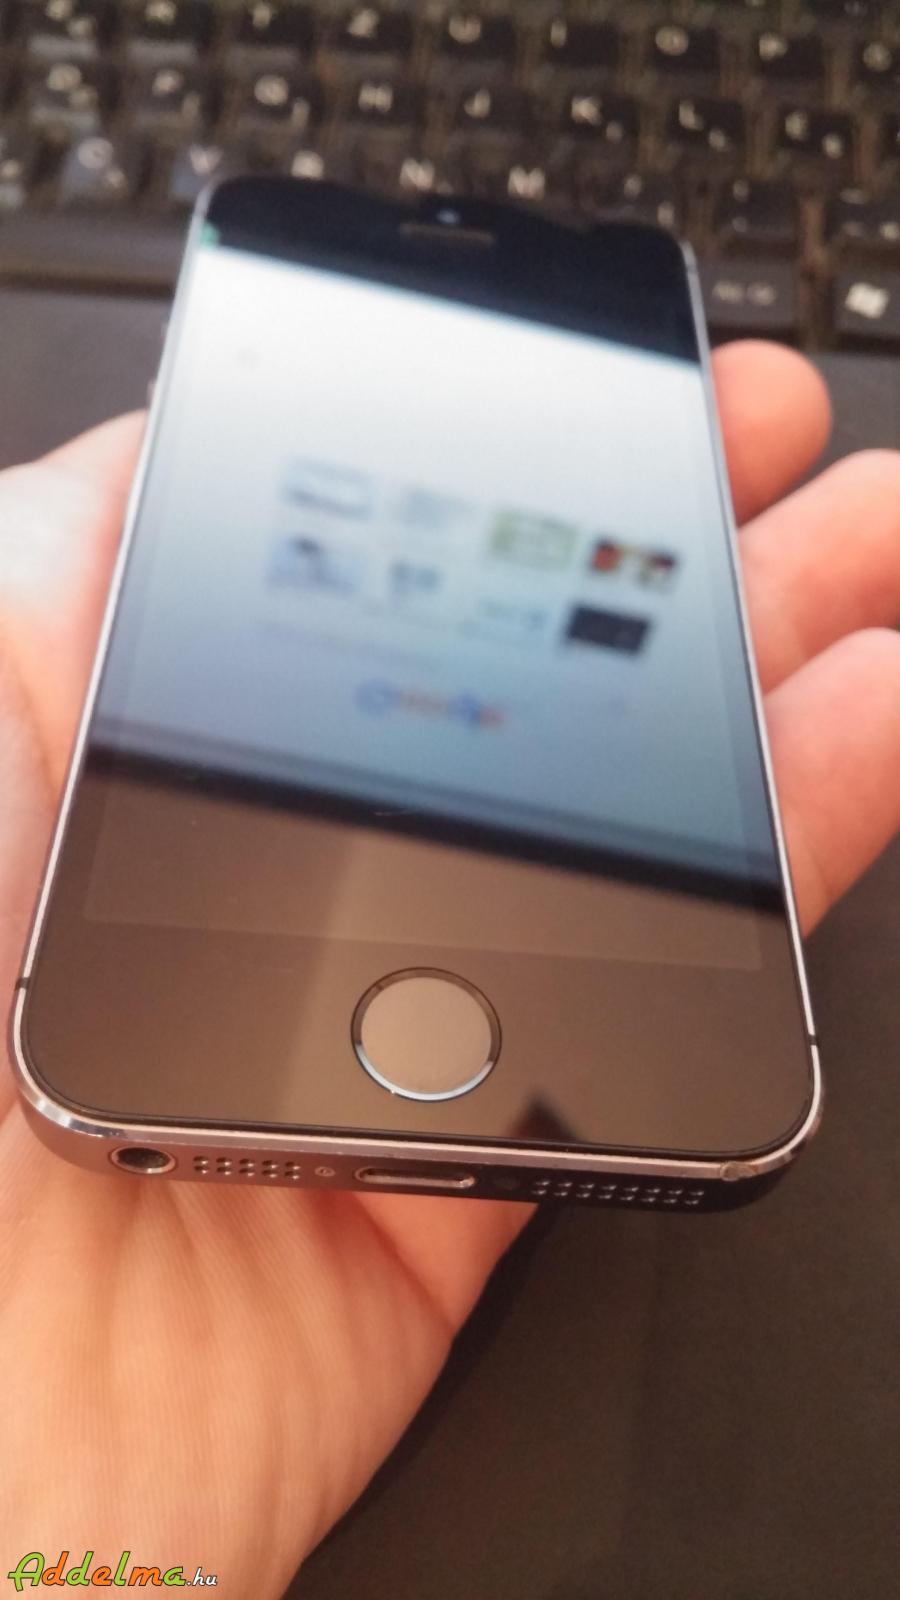 Eladó szép állapotú gyári független Iphone 5s Space Grey 16GB